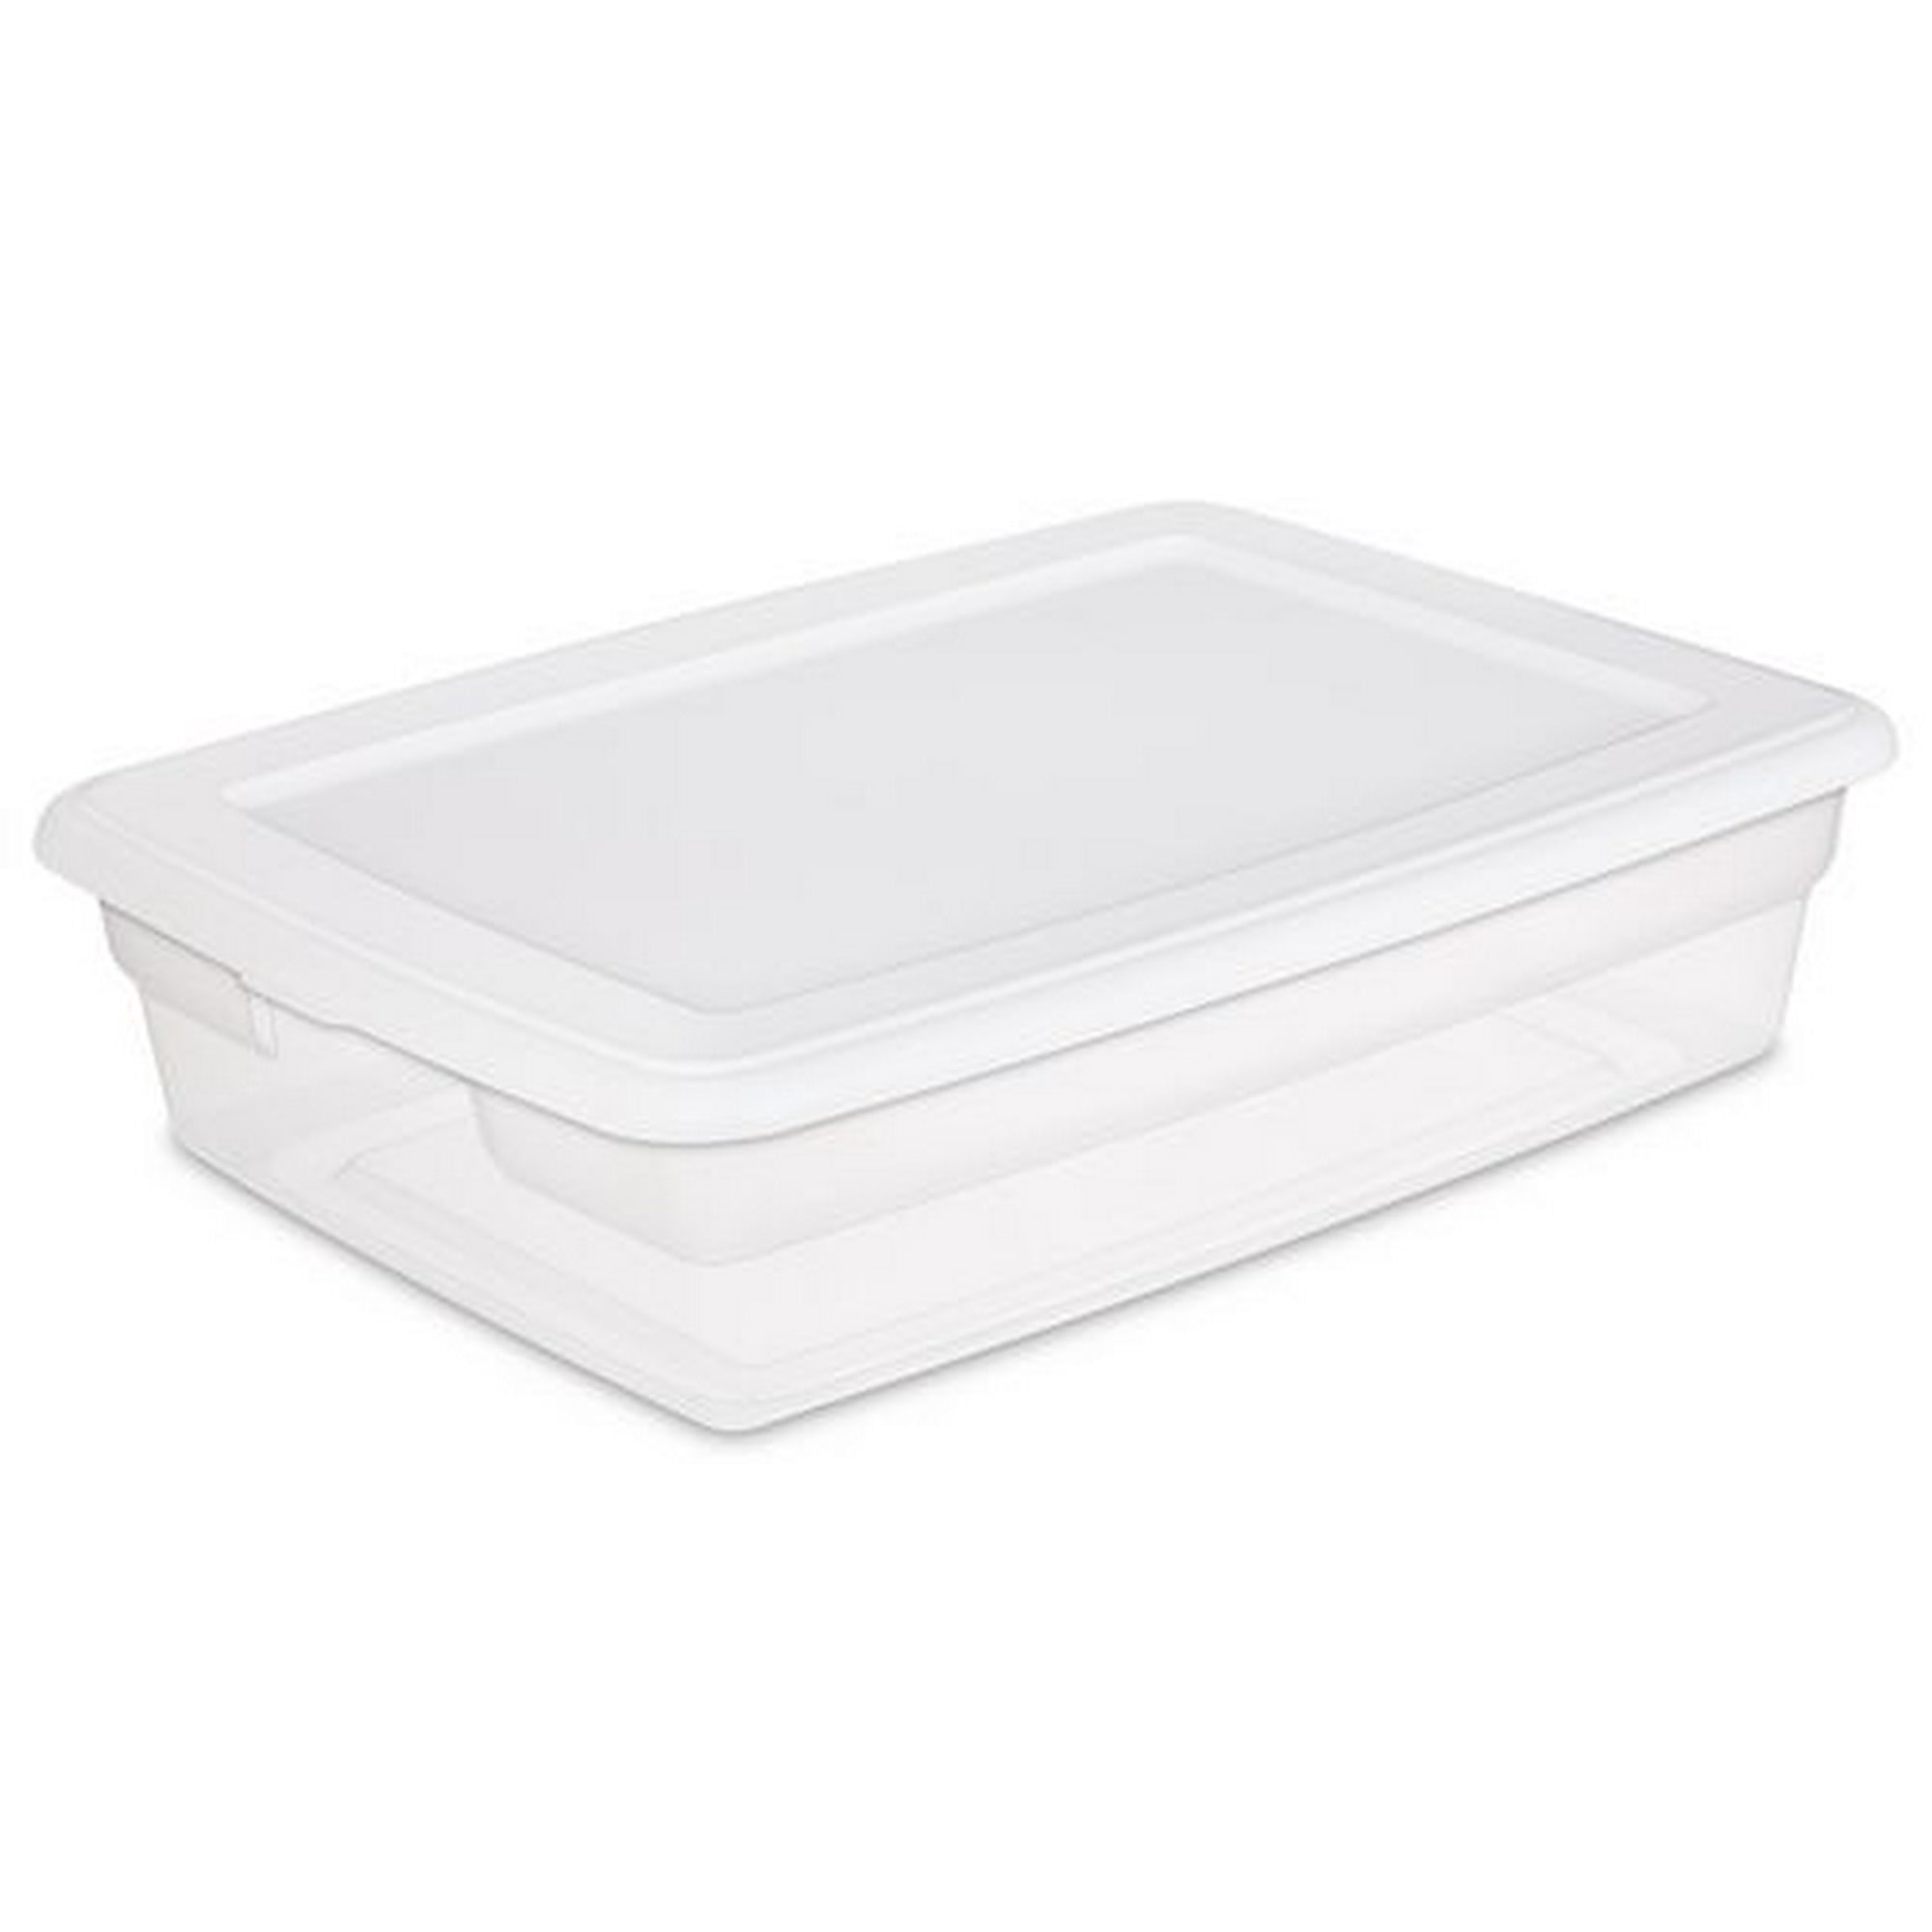 Sterilite 27 Liter White Storage Box, 27 Liter 